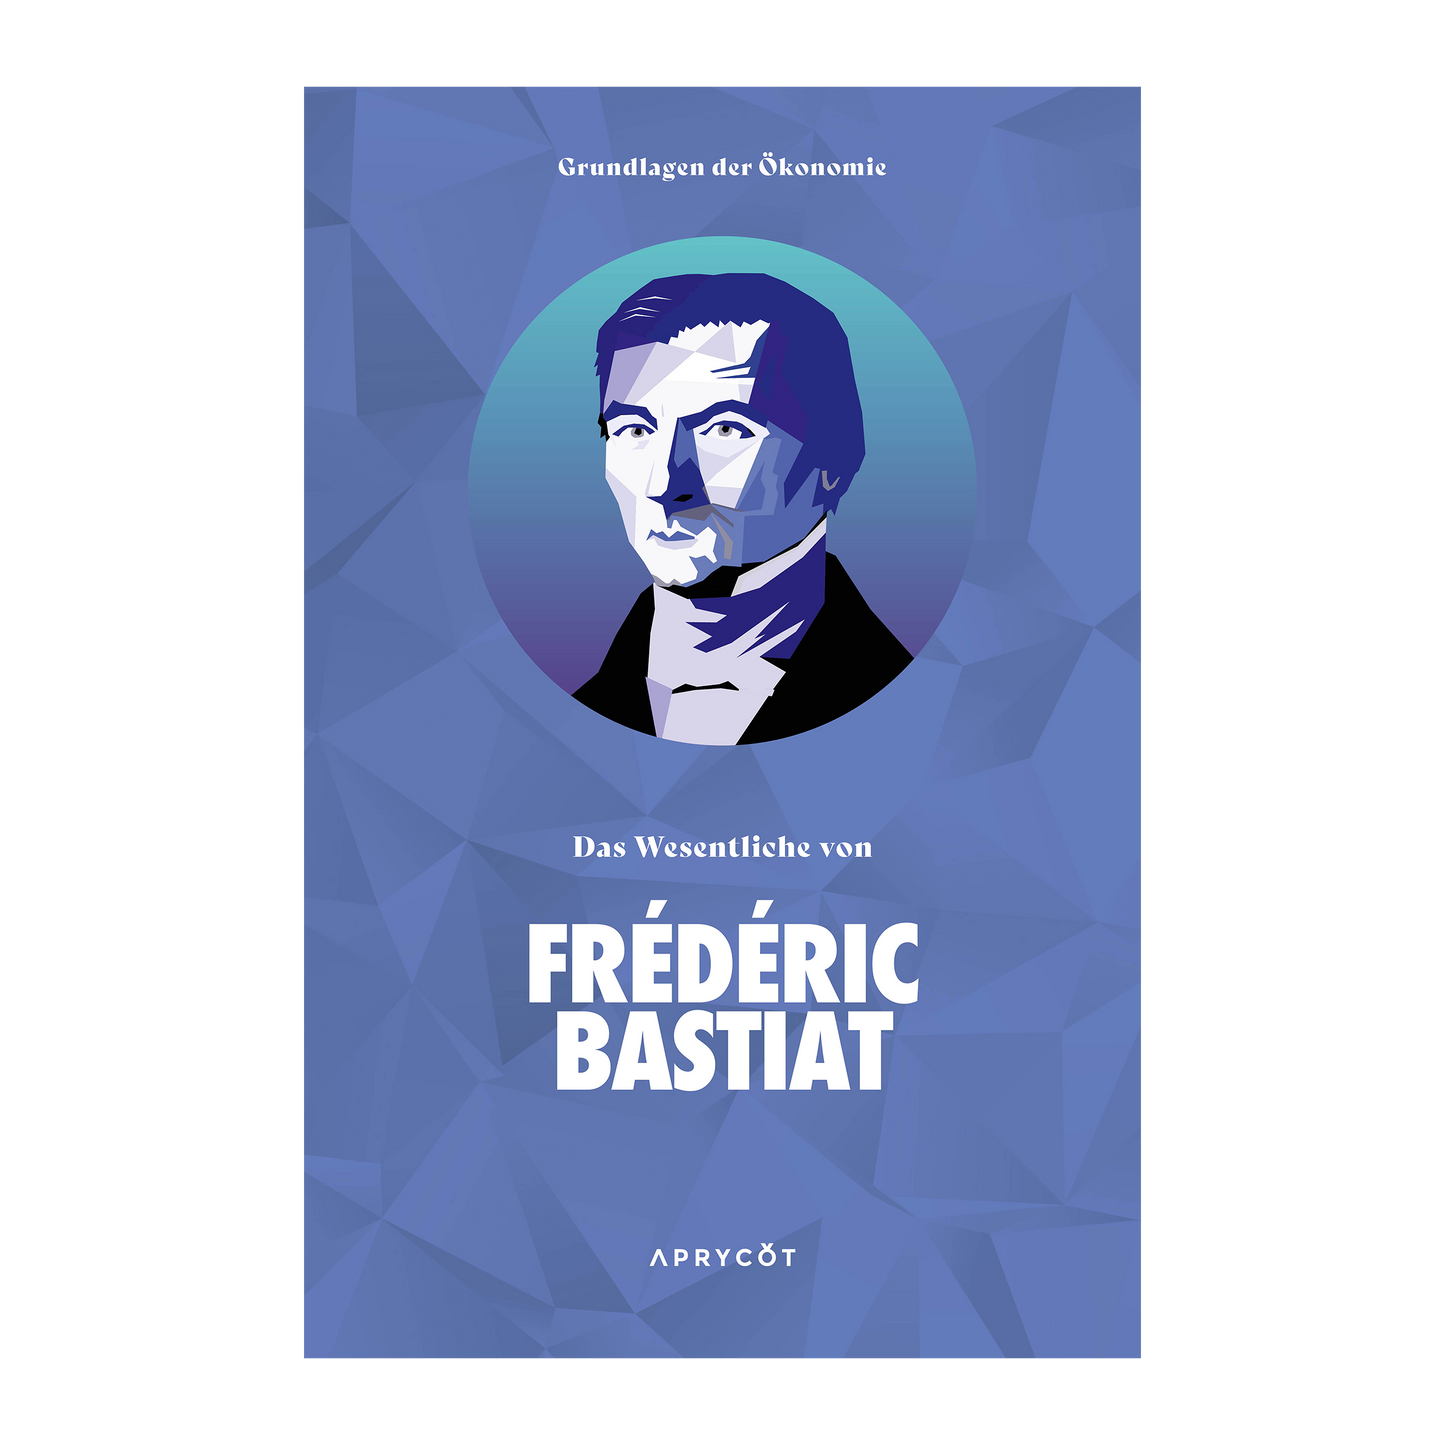 Grundlagen der Ökonomie: Das Wesentliche von Frédéric Bastiat